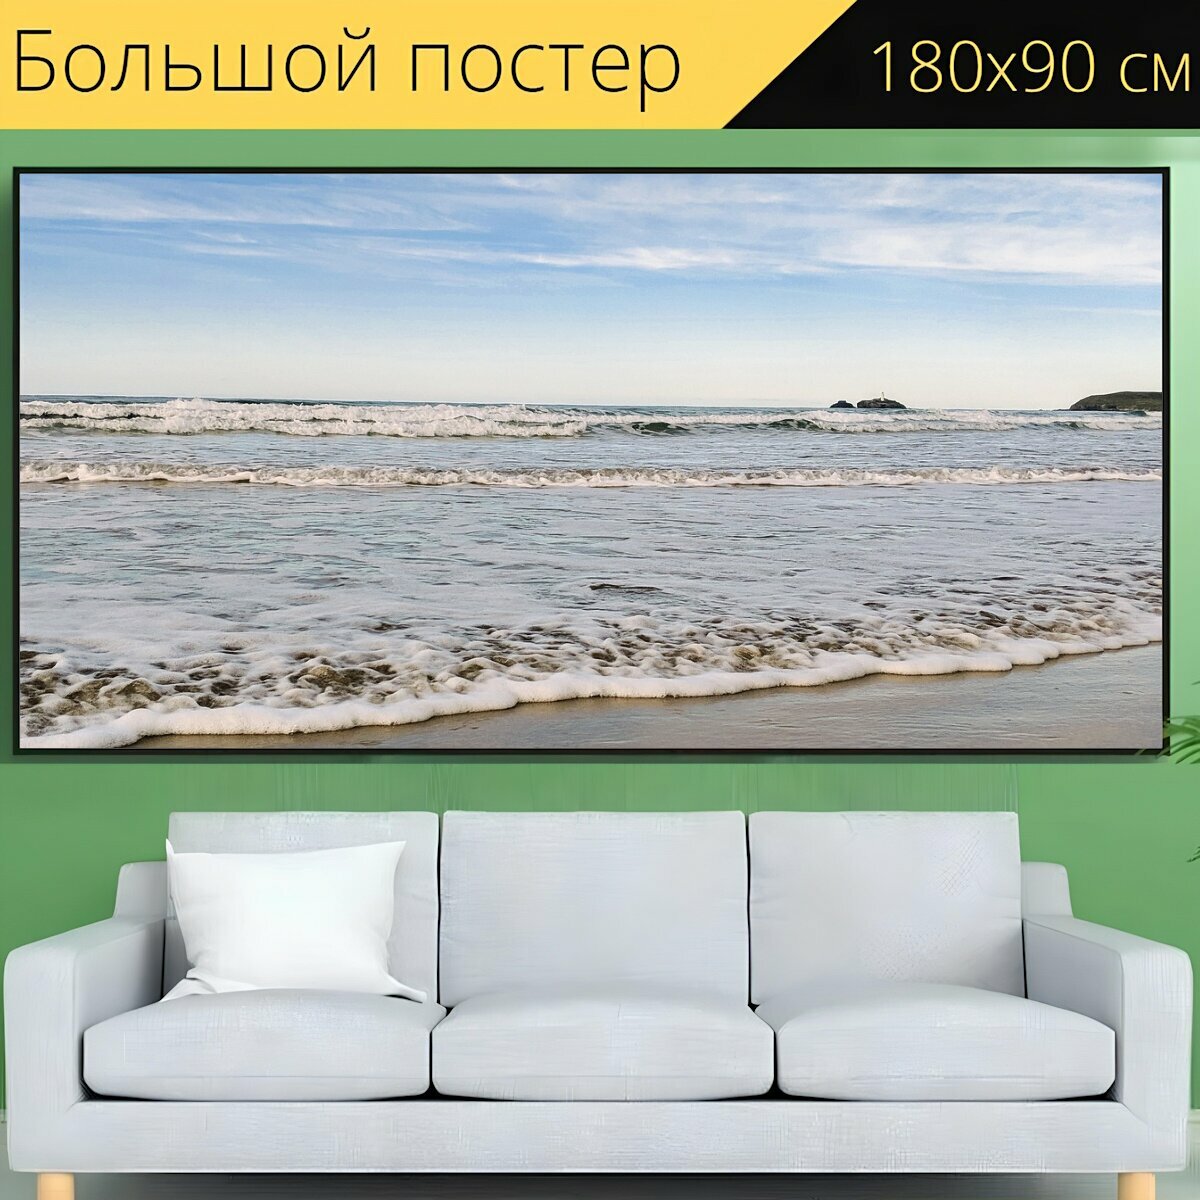 Большой постер "Море, приморский, пляж" 180 x 90 см. для интерьера